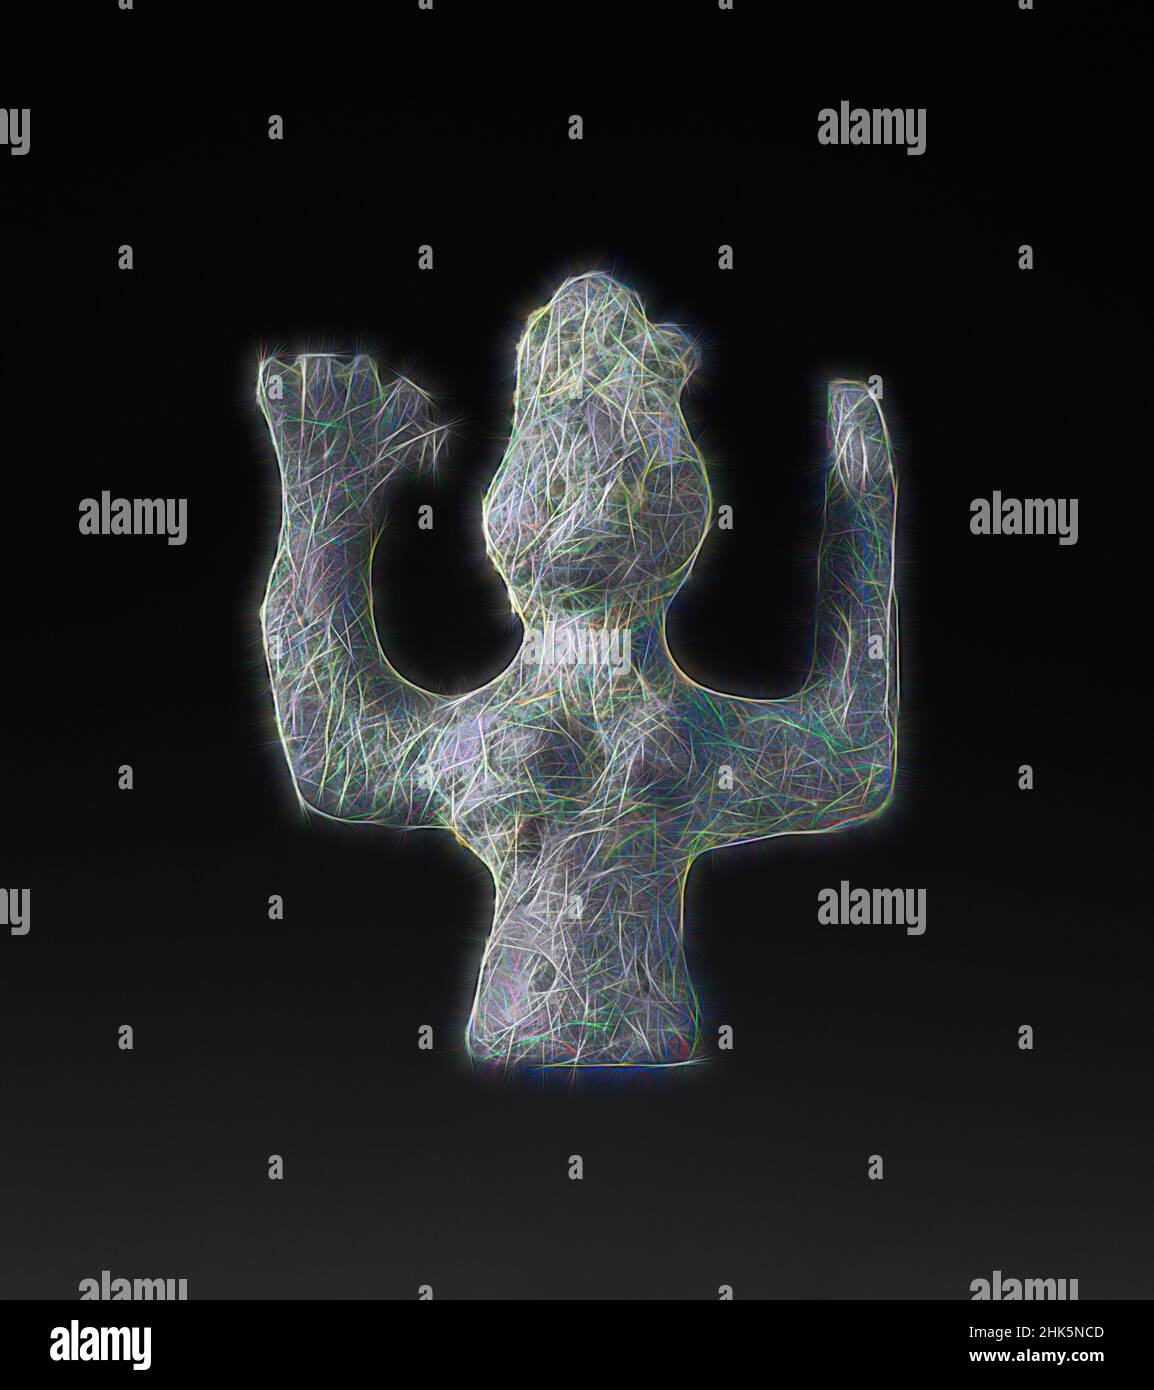 Inspiré par la figurine féminine, Minoan, crétoise, 3500–1500 C.-B., c. 1200–1100 C.-B., Bronze, Crète, Grèce, Europe, Metalwork, sculpture, 1 7/16 x 1 1/4 x 3/8 po (3,7 x 3,2 x 1 cm, repensé par Artotop. L'art classique réinventé avec une touche moderne. Conception de lumière chaleureuse et gaie, de luminosité et de rayonnement de lumière. La photographie s'inspire du surréalisme et du futurisme, embrassant l'énergie dynamique de la technologie moderne, du mouvement, de la vitesse et révolutionne la culture Banque D'Images